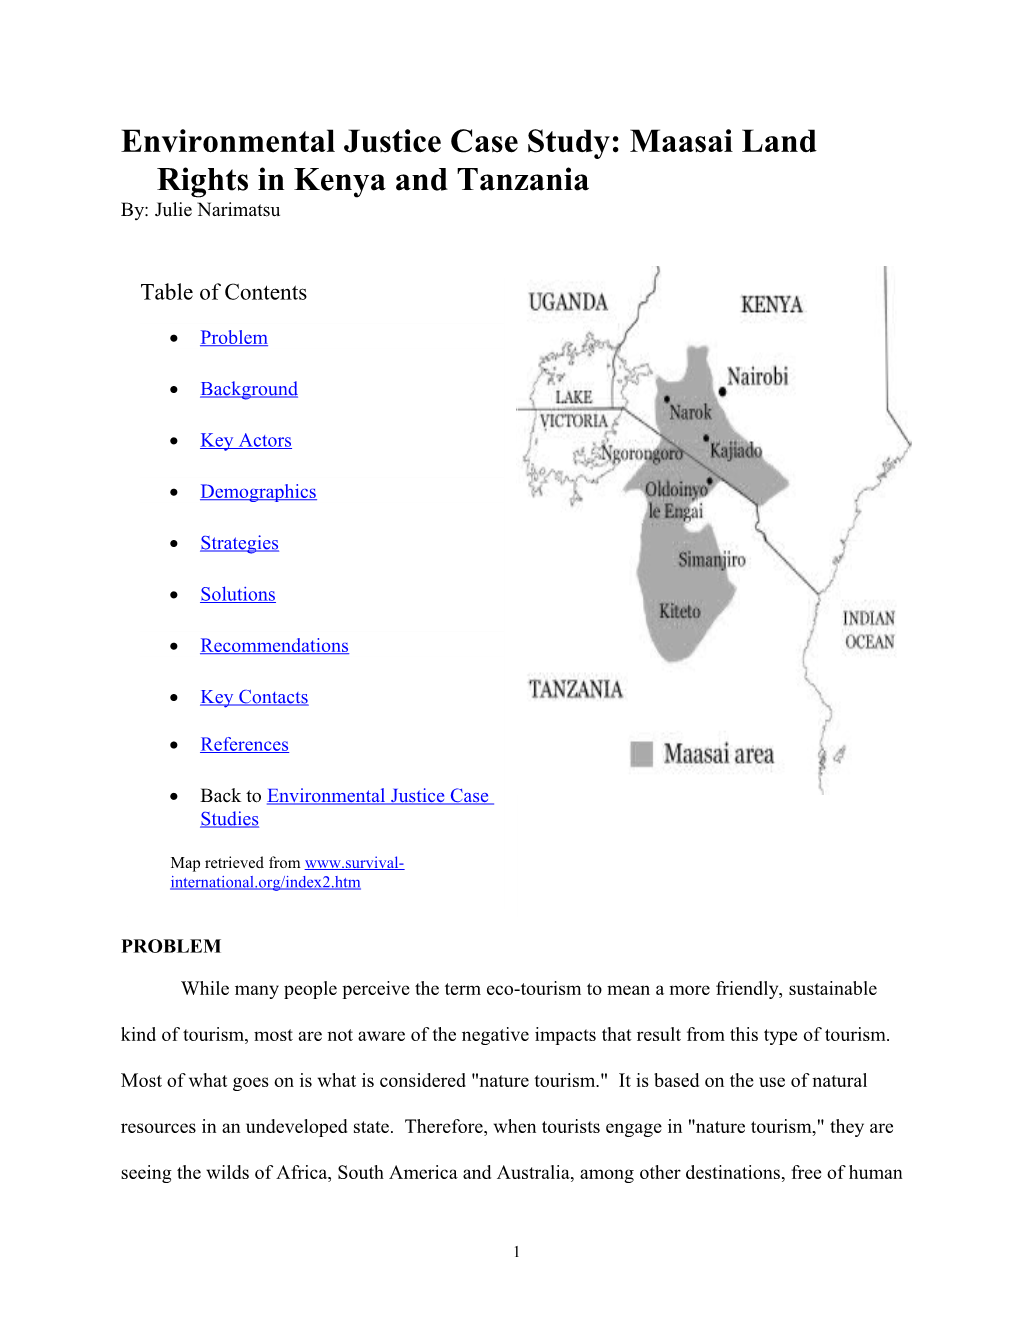 Environmental Justice Case Study: Maasai Land Rights in Kenya and Tanzania